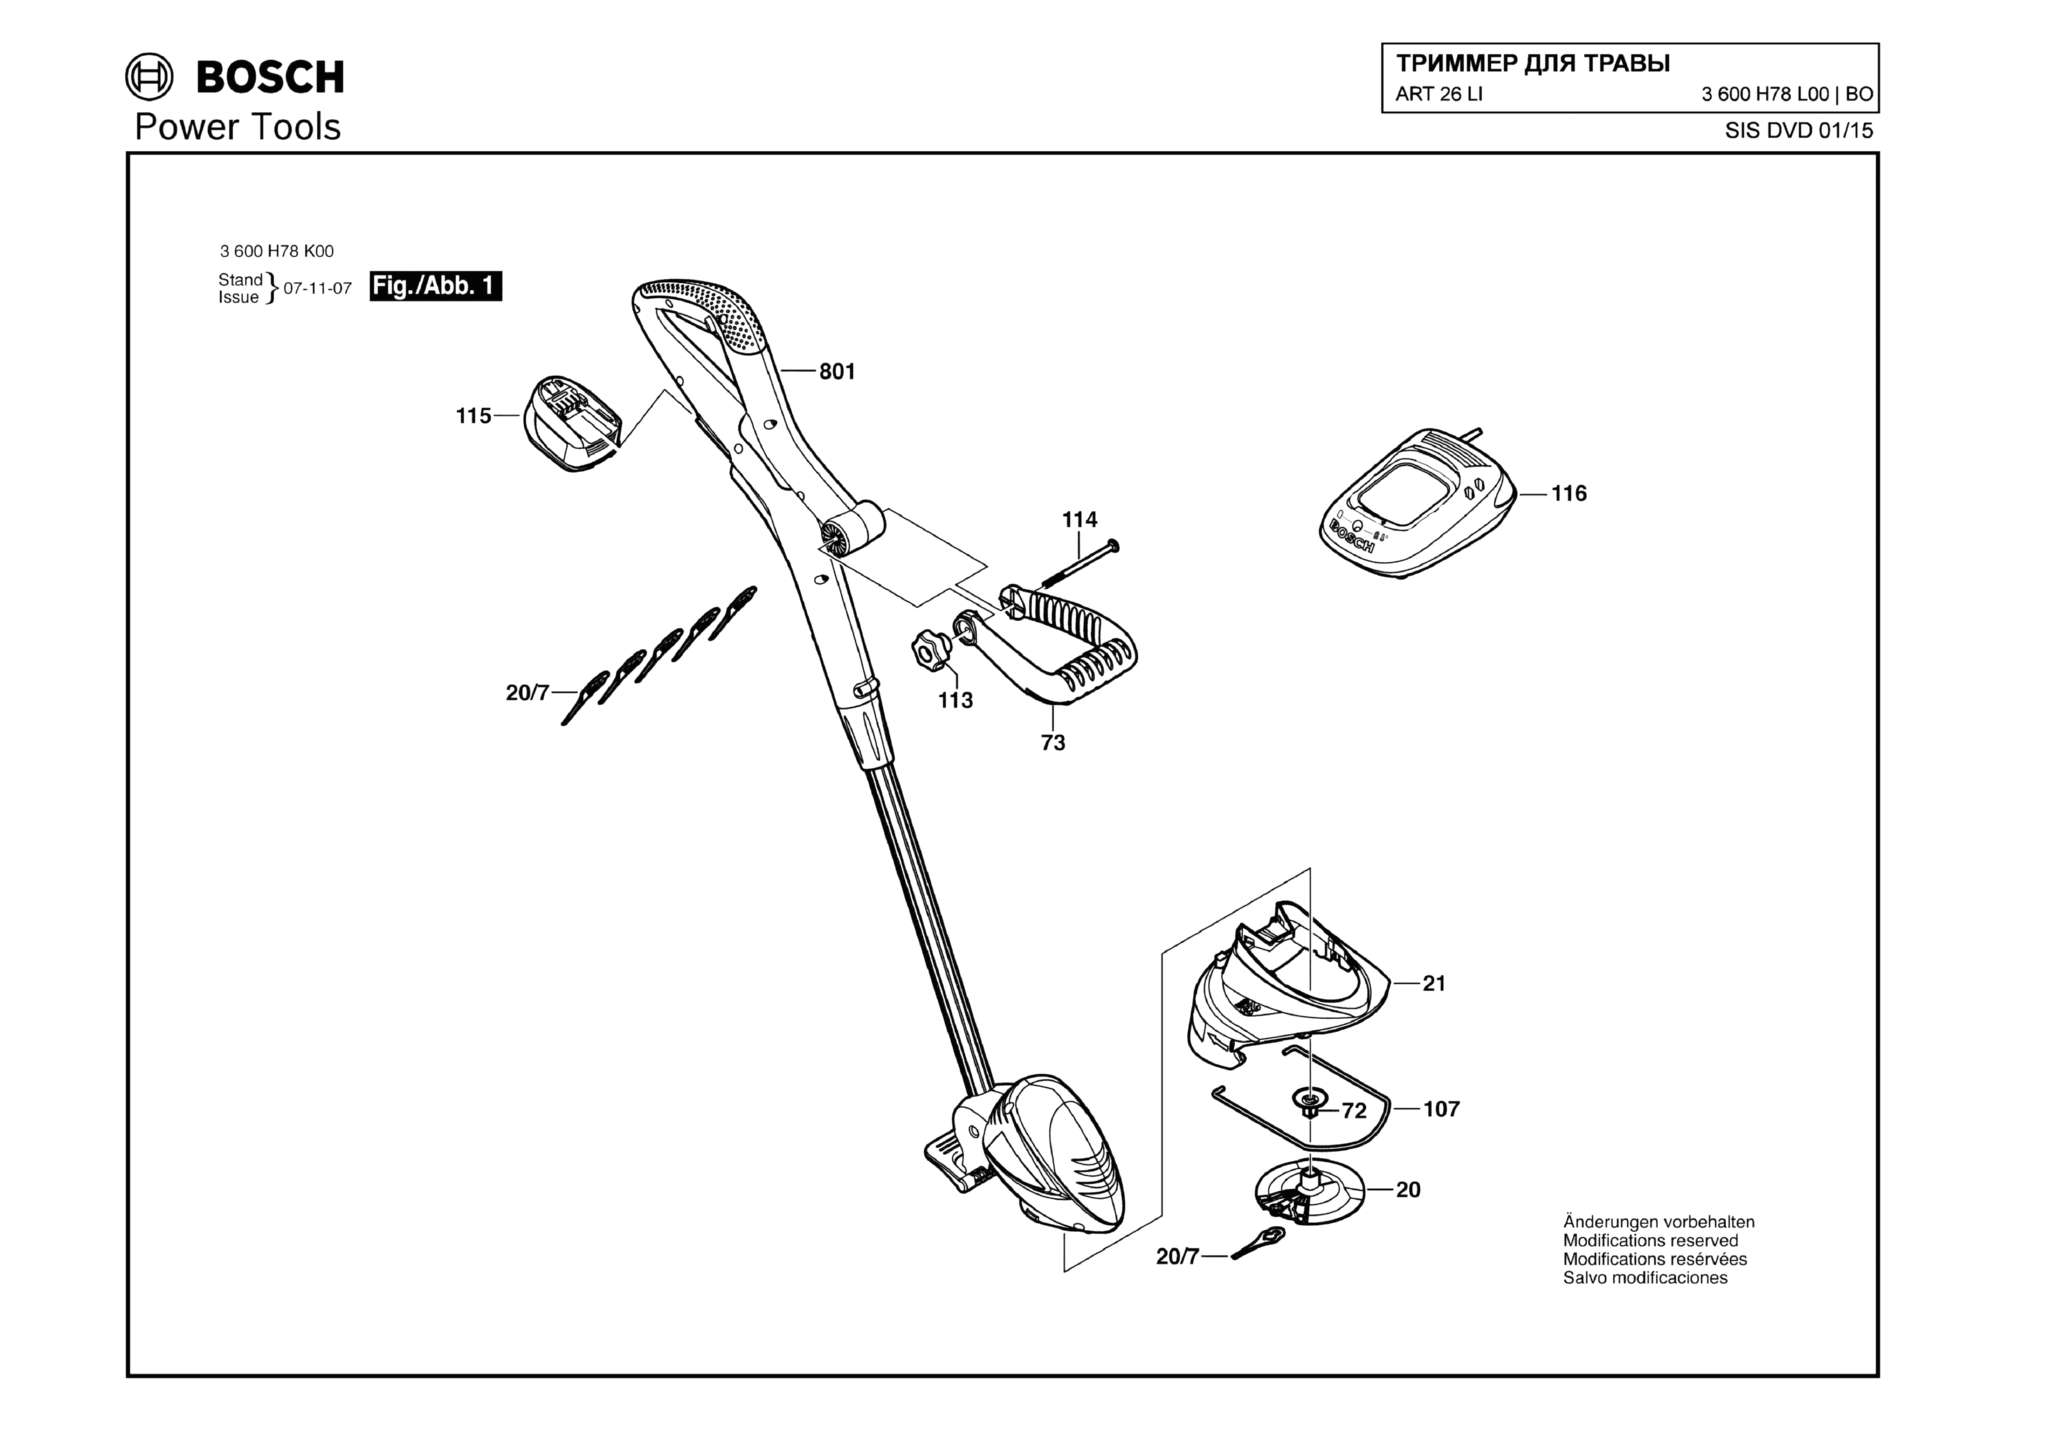 Запчасти, схема и деталировка Bosch ART 26 LI (ТИП 3600H78L00)